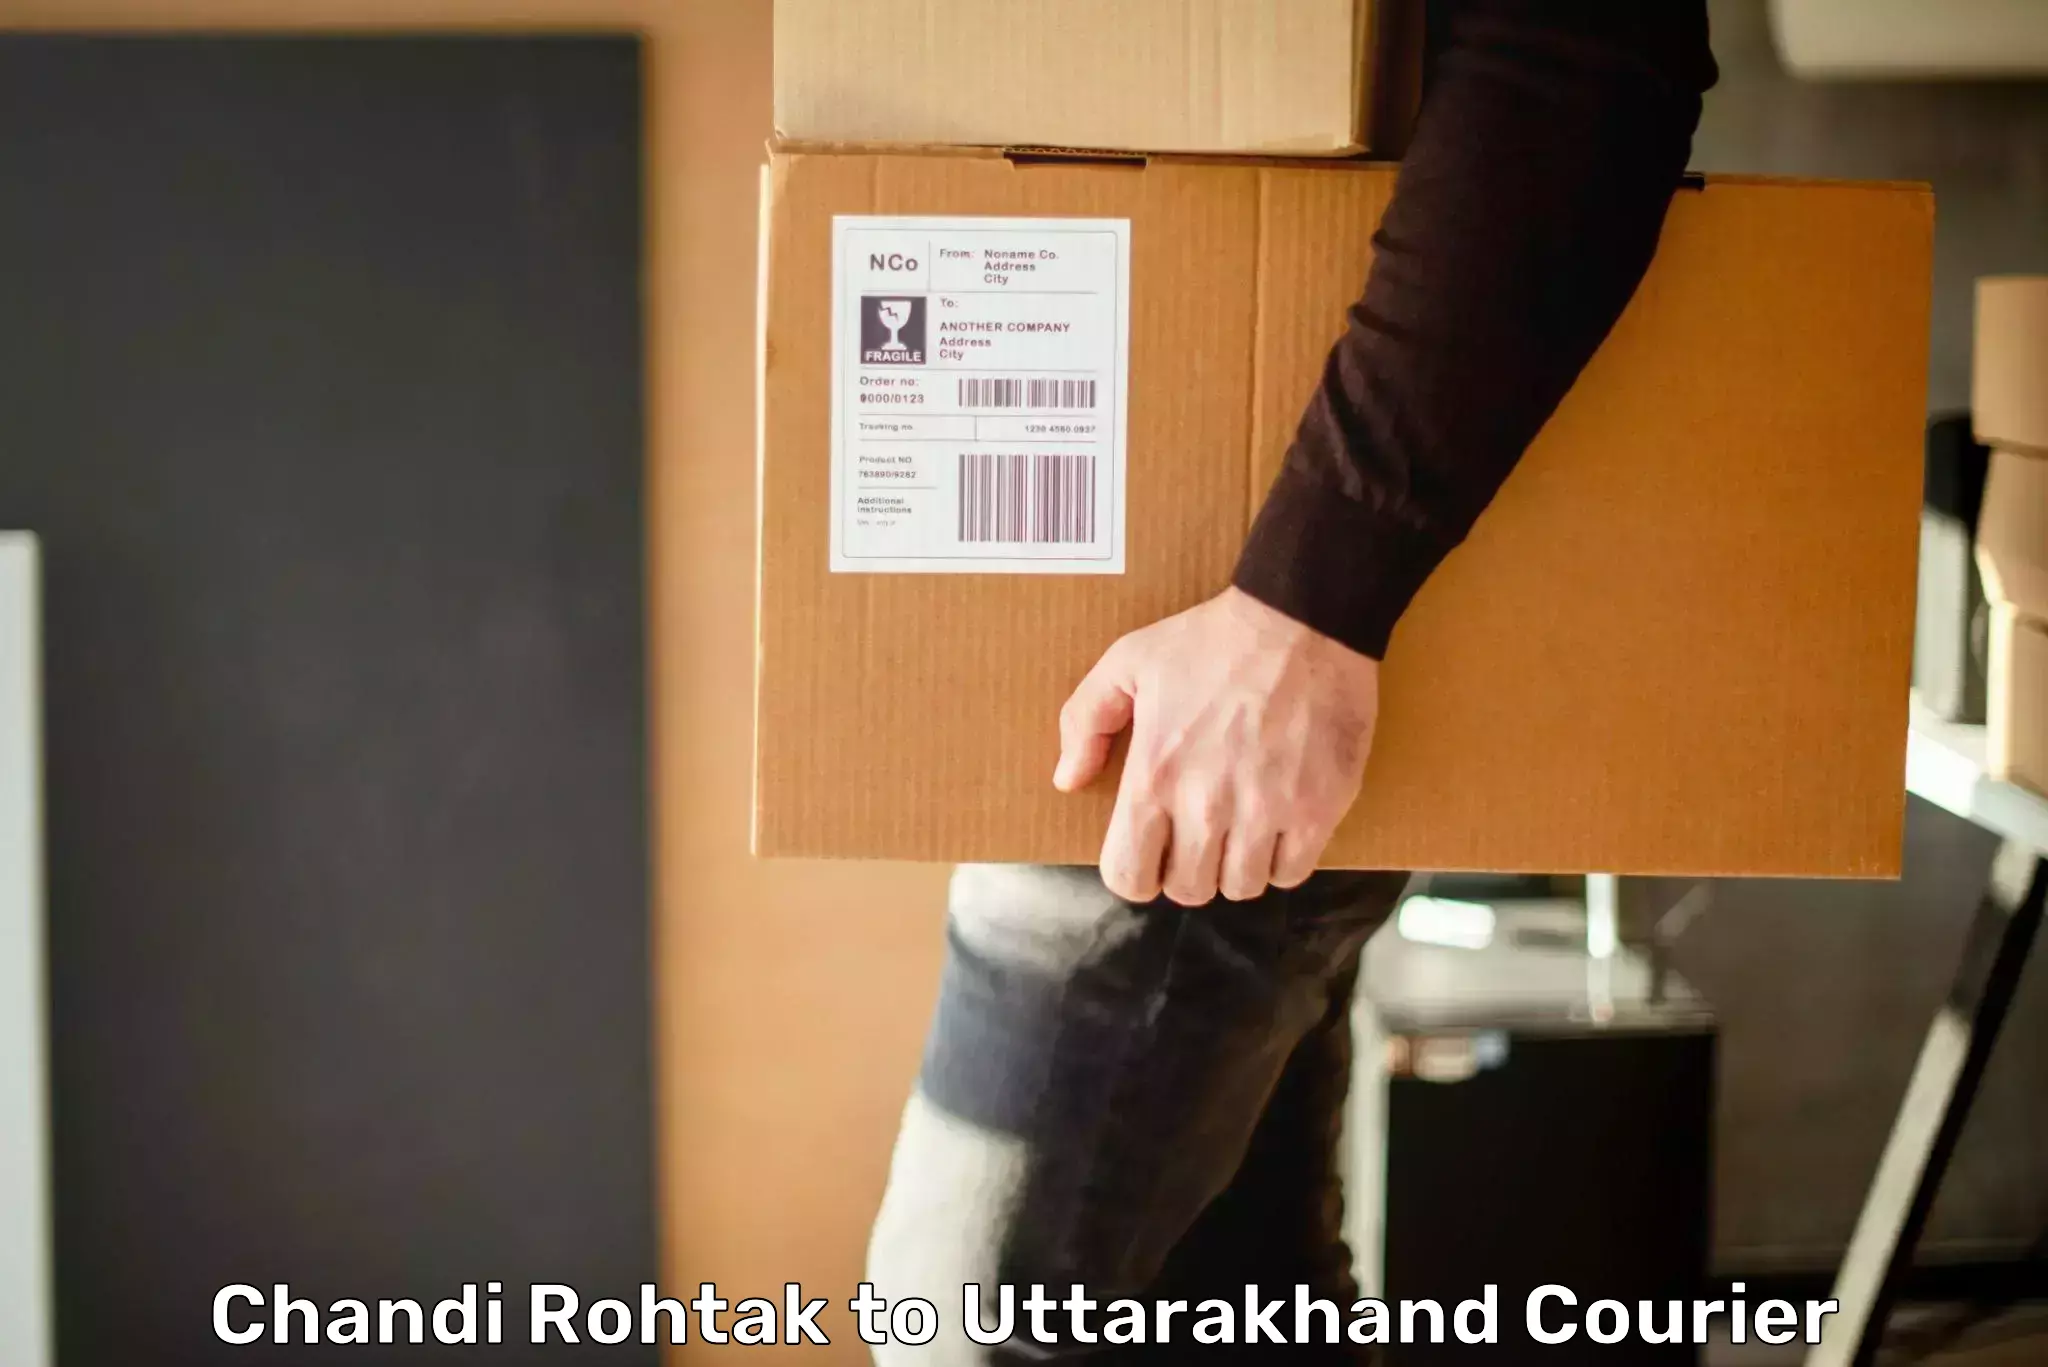 Efficient freight service Chandi Rohtak to Dehradun